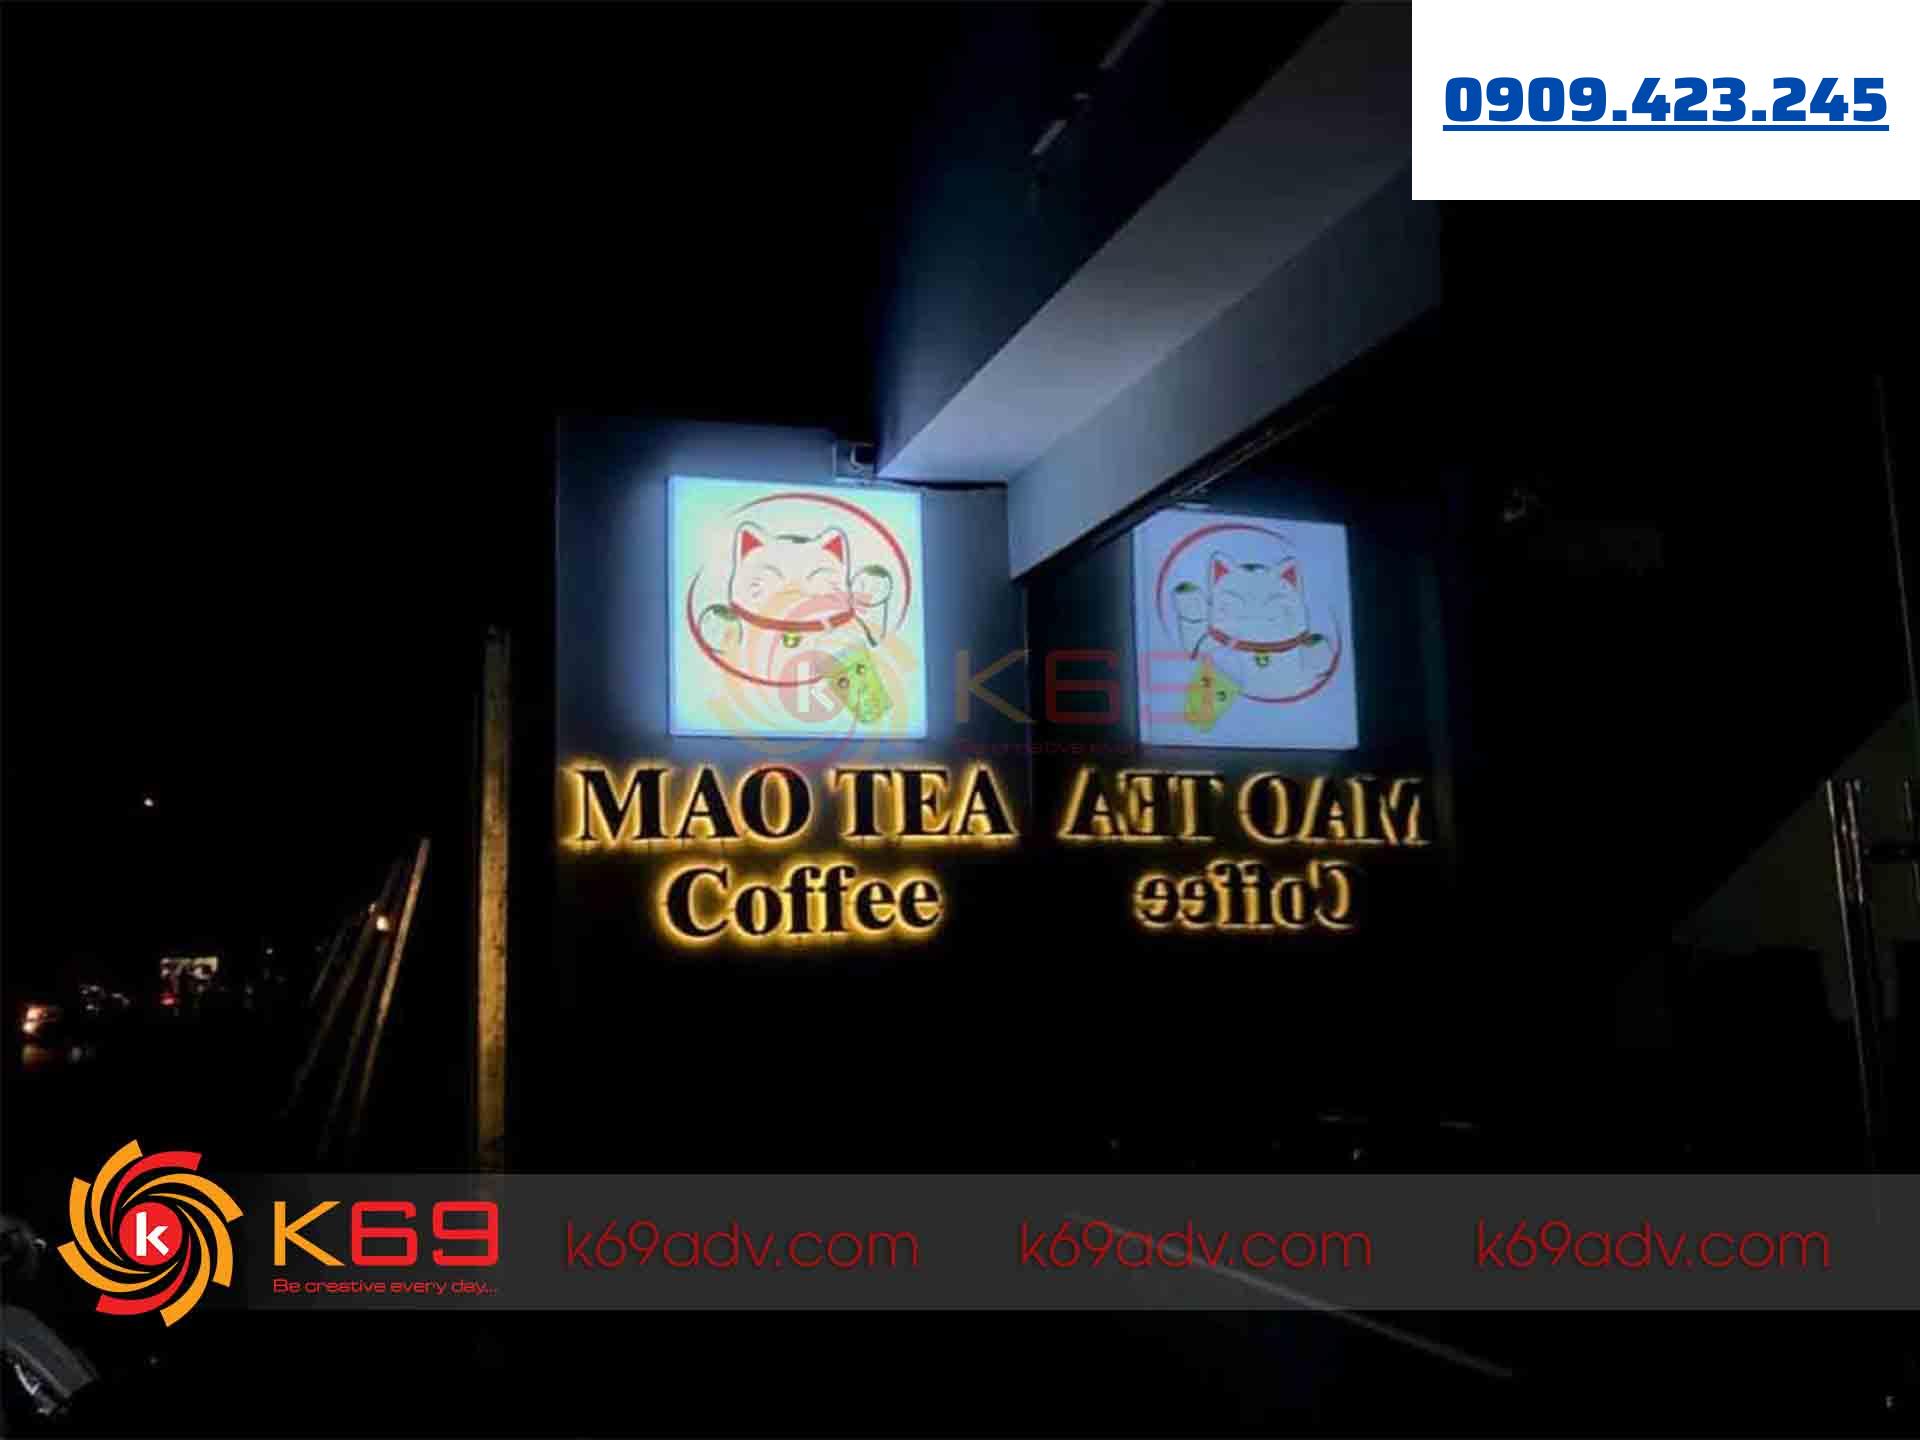 Mẫu bảng hiệu hộp đèn quán Mao Tea Coffee tại K69ADV